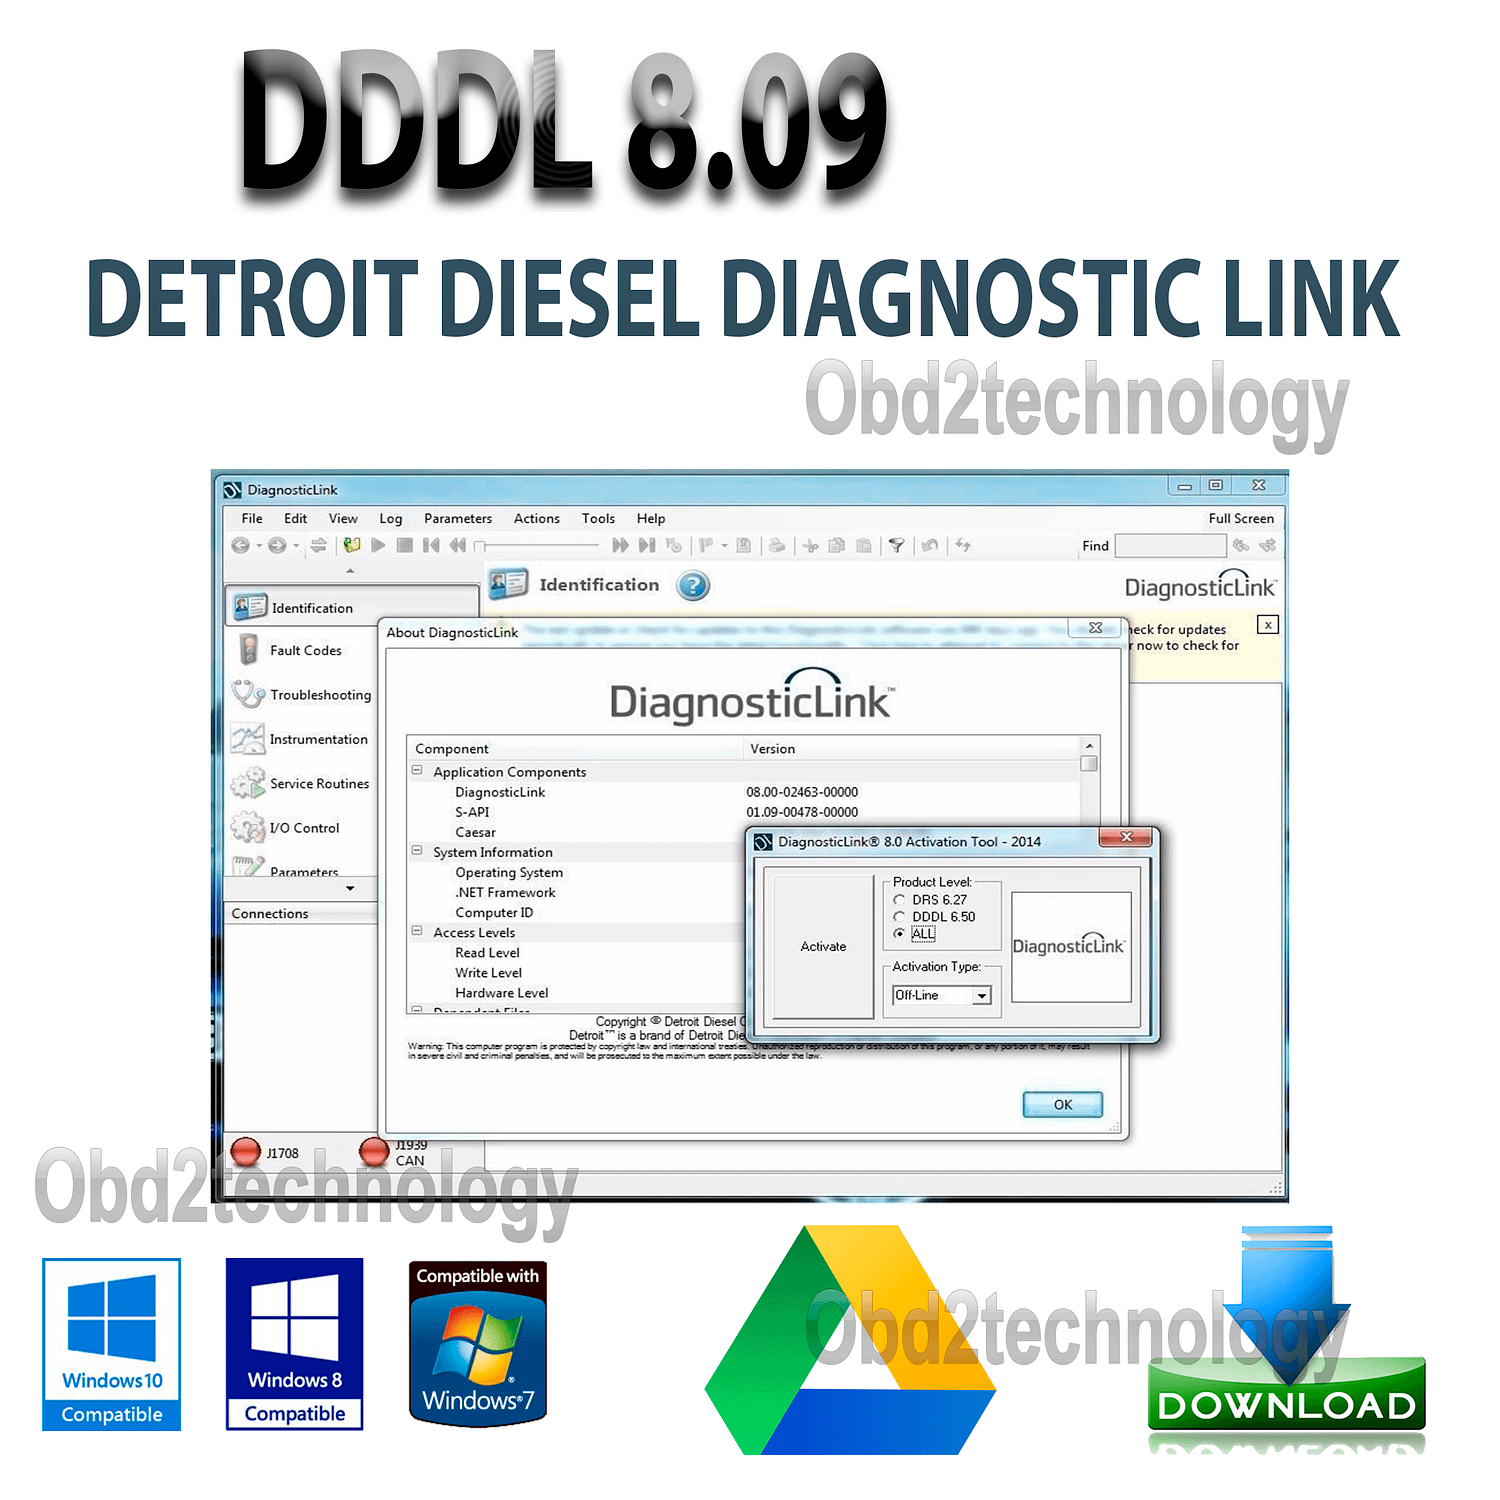 dddl 8.09 detroit diesel diagnostic link 8+troubleshooting files+keygen instant download